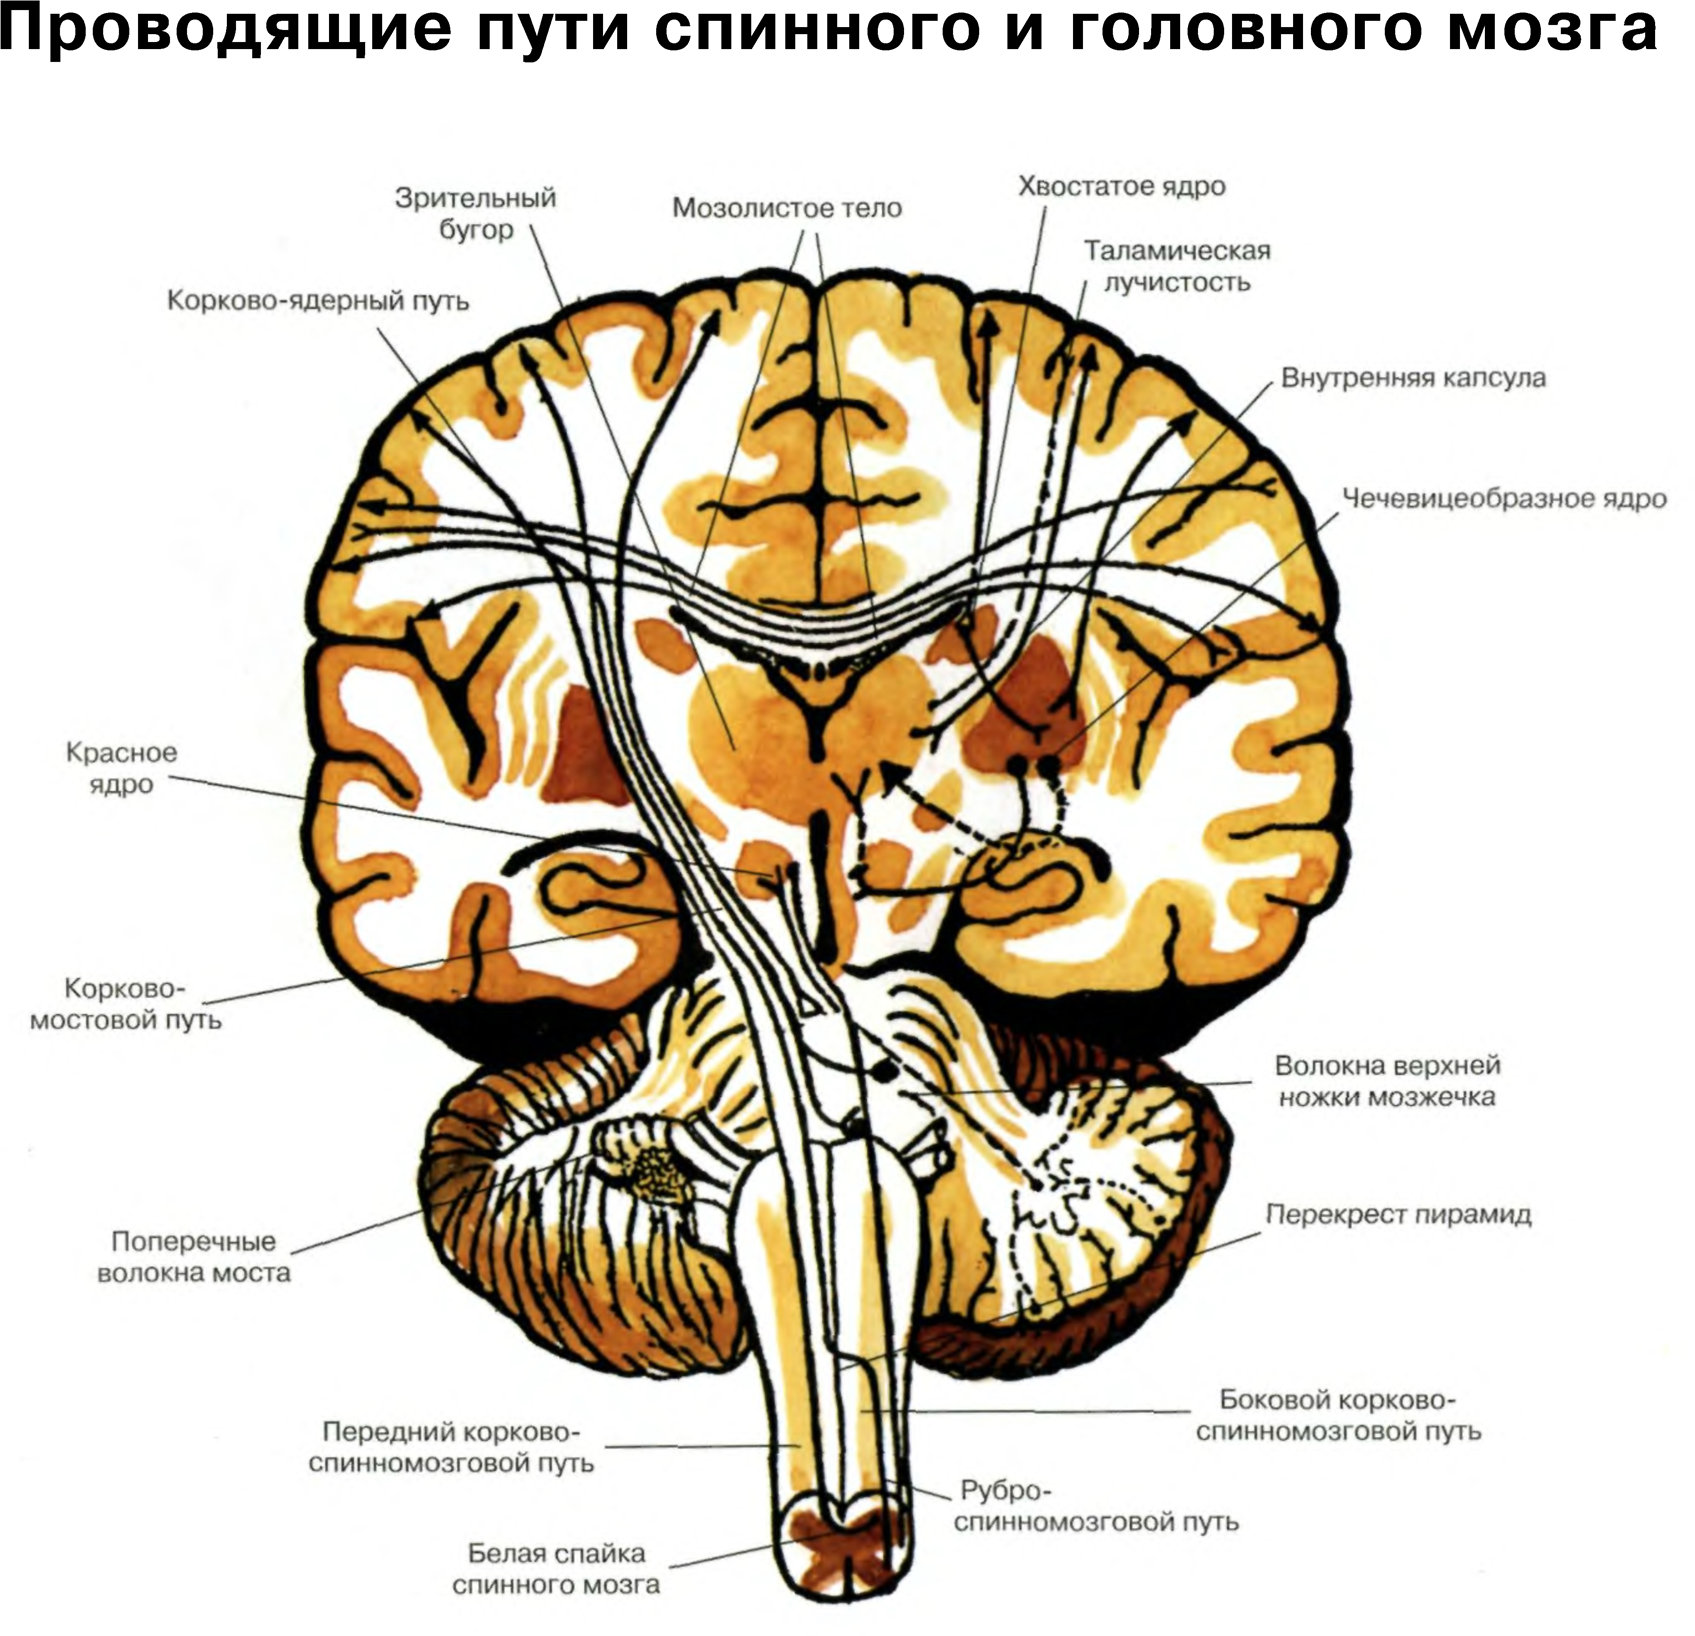 Длинные отростки головного мозга. Проводящие пути головного мозга восходящие и нисходящие. Чувствительные проводящие пути спинного и головного мозга анатомия. Схему восходящих путей спинного и головного мозга.. Проводящие пути спинной мозг анатомия строение.